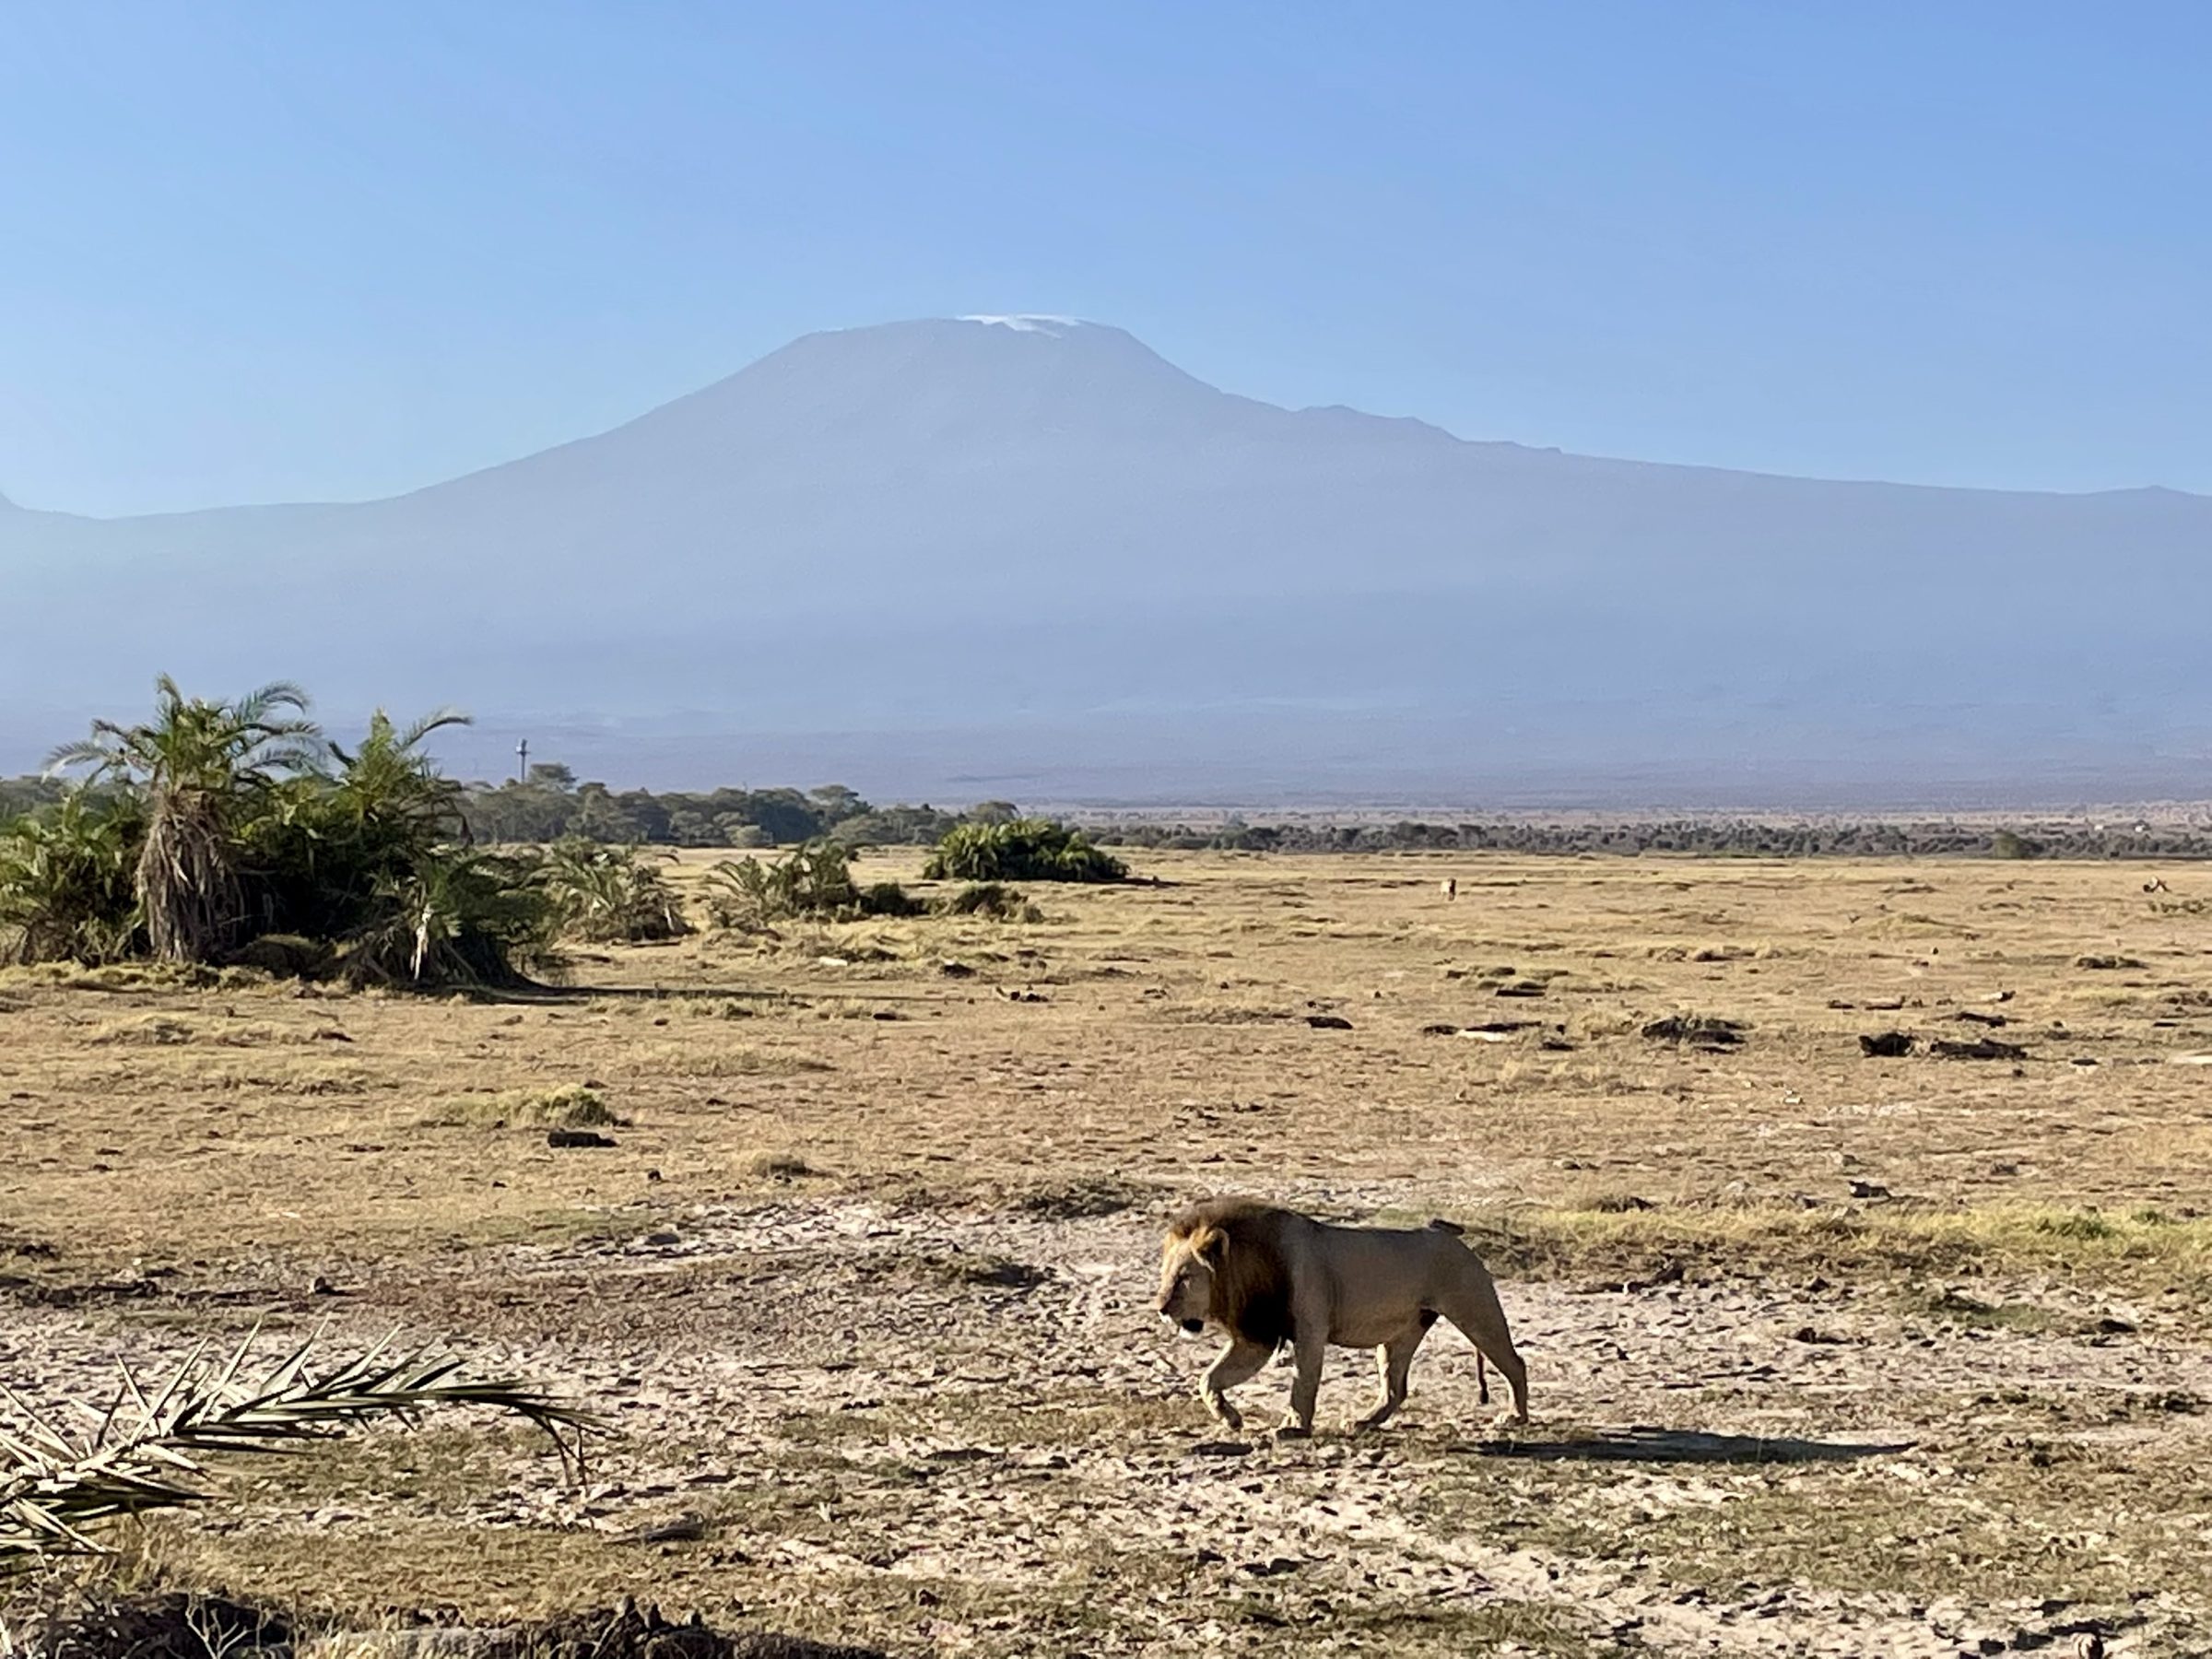 De unieke Amboseli foto: een leeuw met de besneeuwde Kilimanjaro op de achtergrond